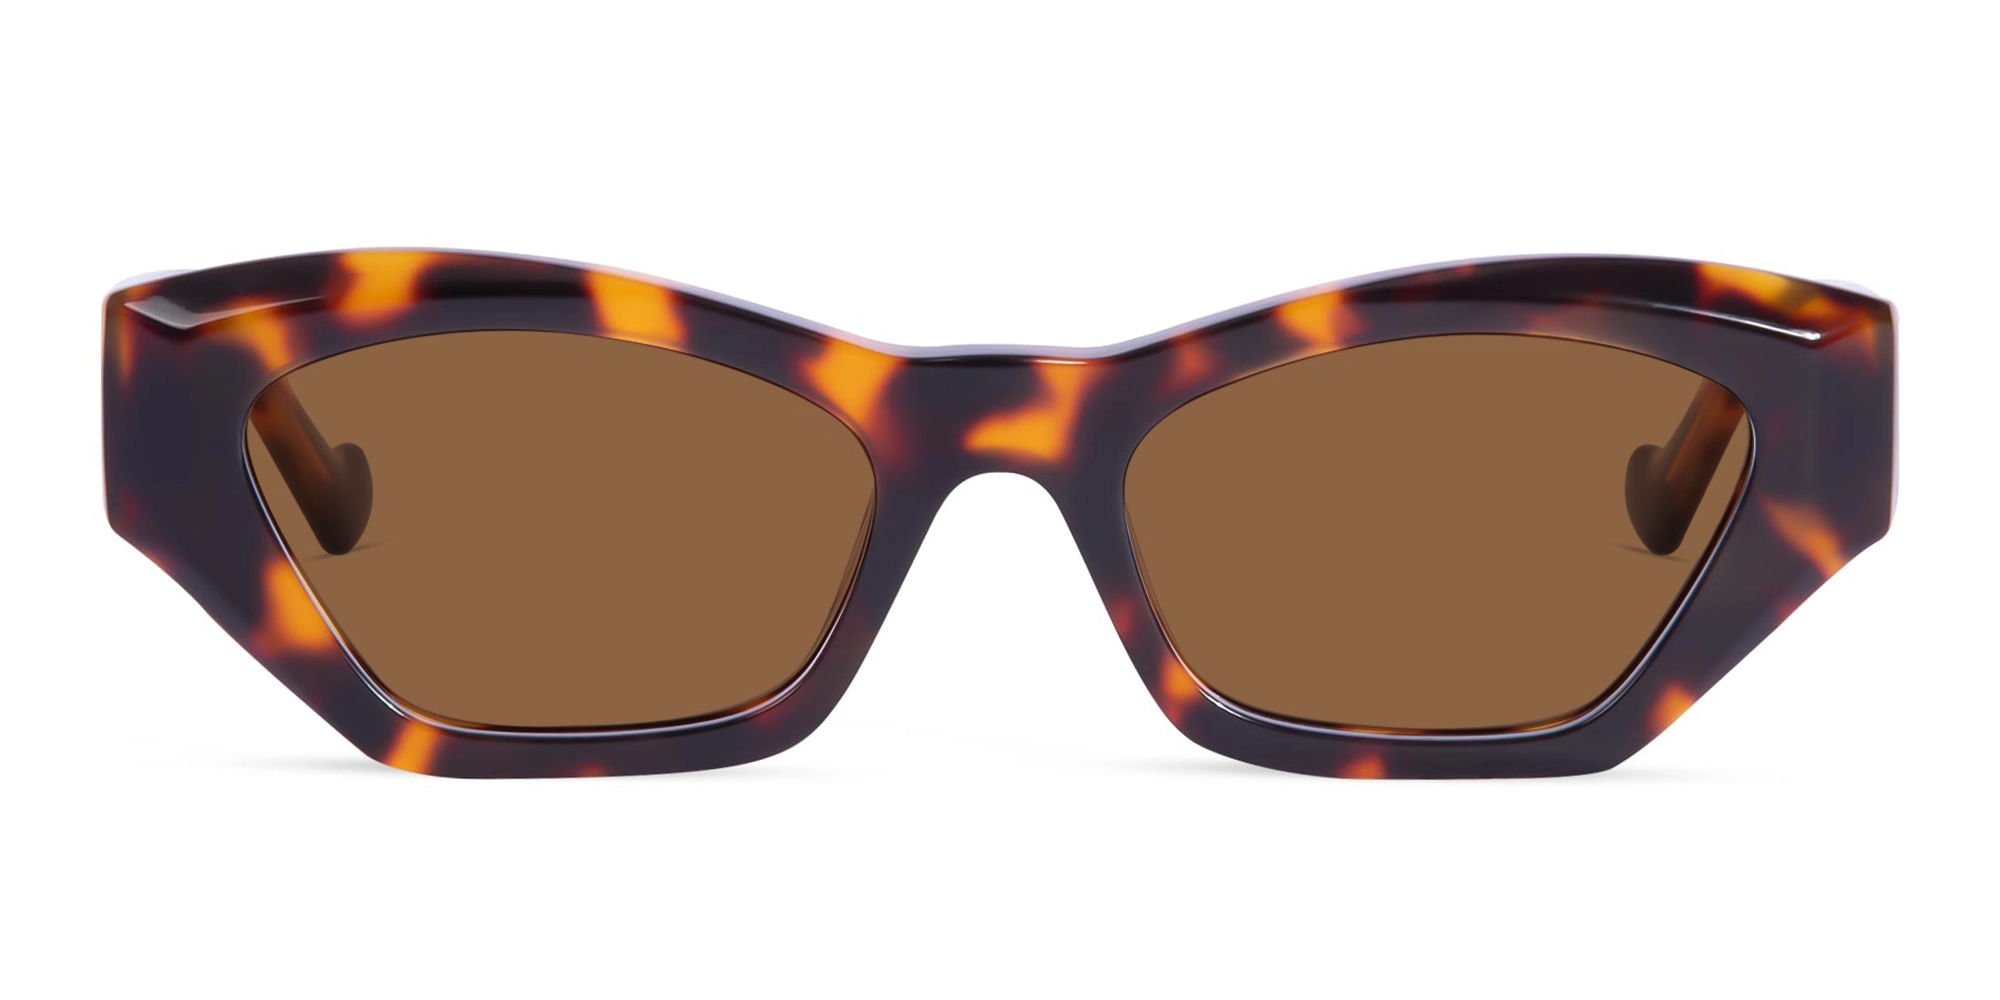 Tortoise Shell Sunglasses For Women-1